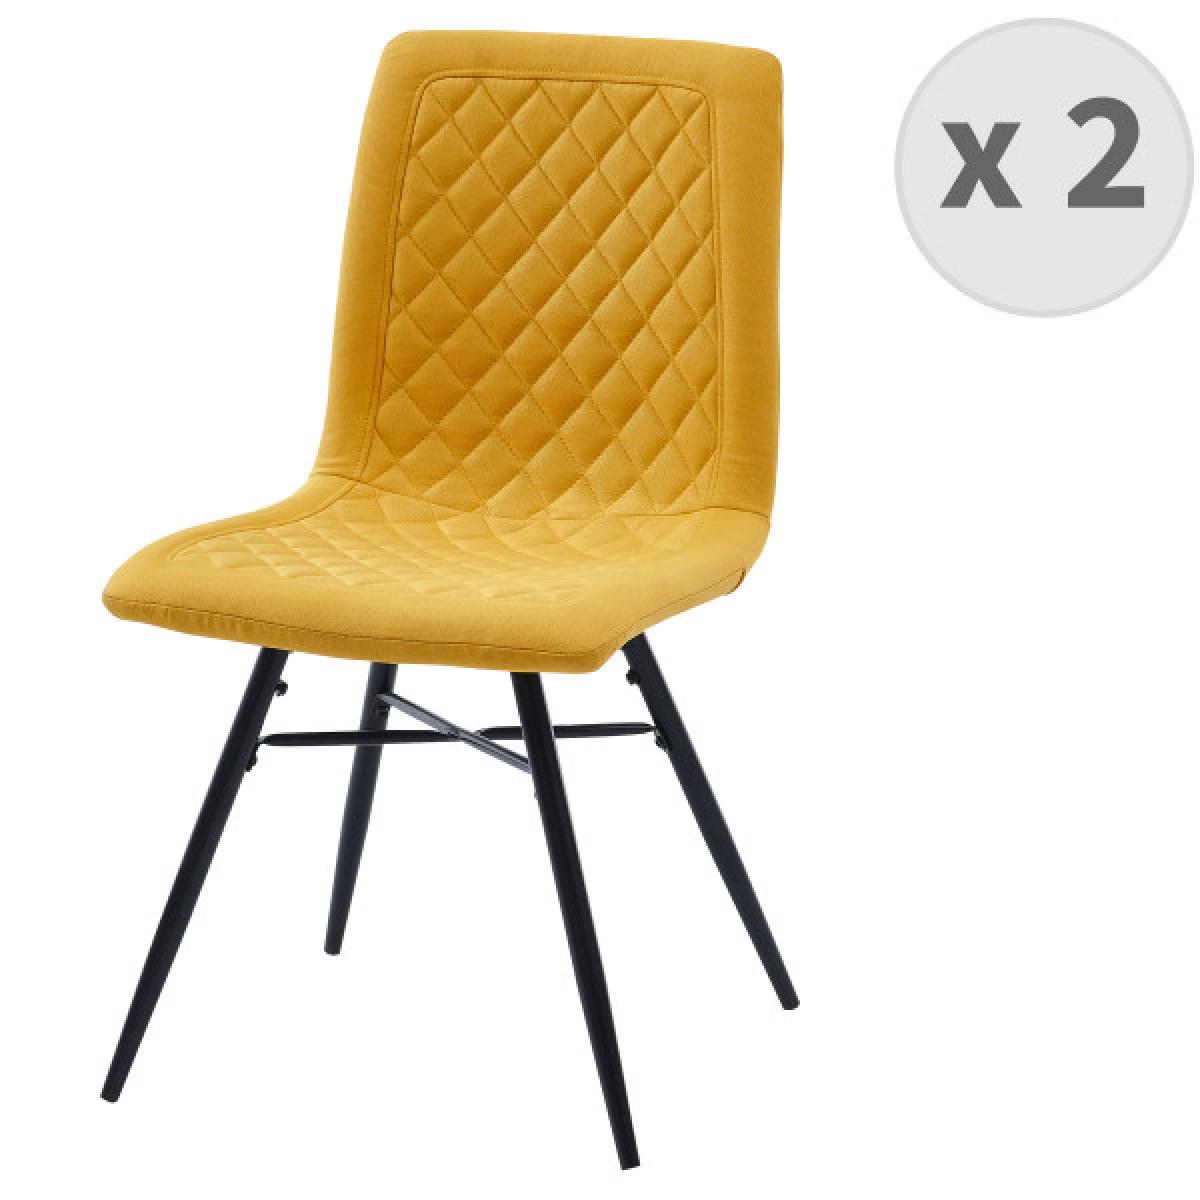 Moloo - OXFORD-Chaise indus tissu curry foncé pieds noir (x2) - Chaises